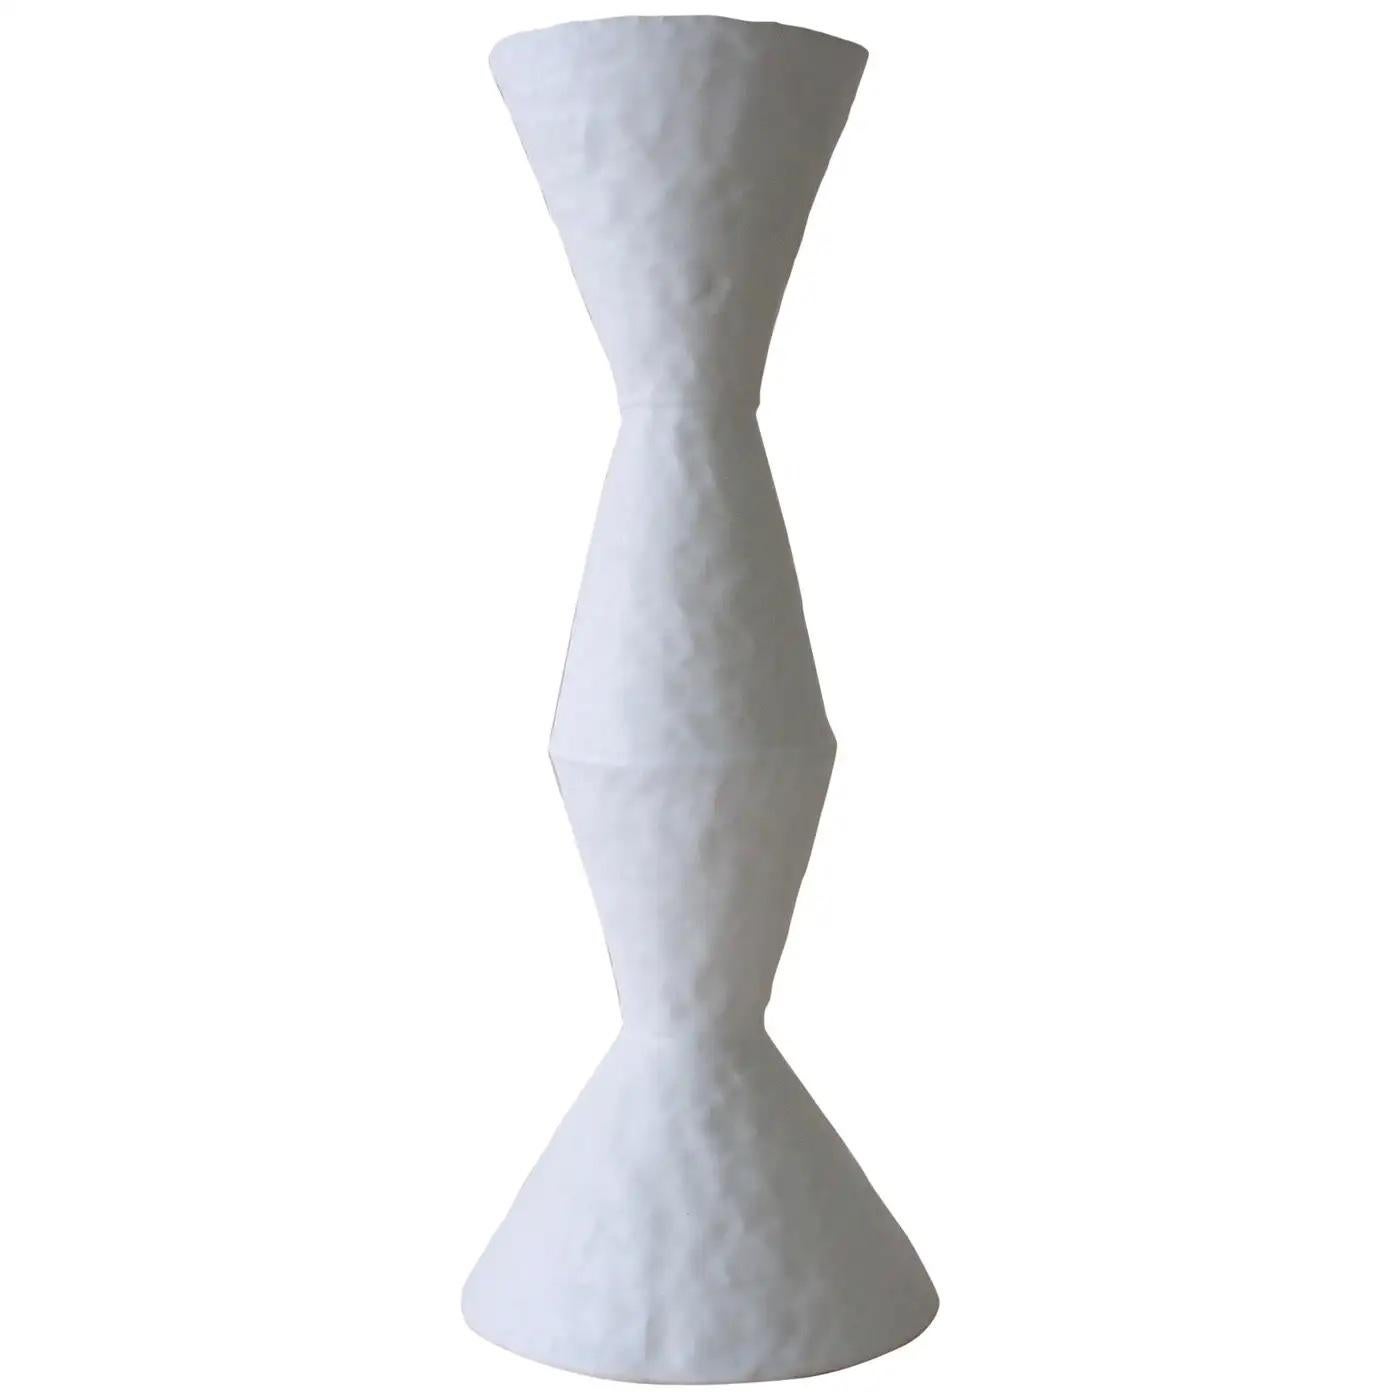 Die glasierte Vase aus weißem Steingut der zeitgenössischen amerikanischen Keramikkünstlerin Giselle Hicks ist Teil ihrer Vessel-Serie. Jede Form wird von Hand mit einer Spiral- und Quetschtechnik hergestellt. Sie sind formale Erkundungen von Form,